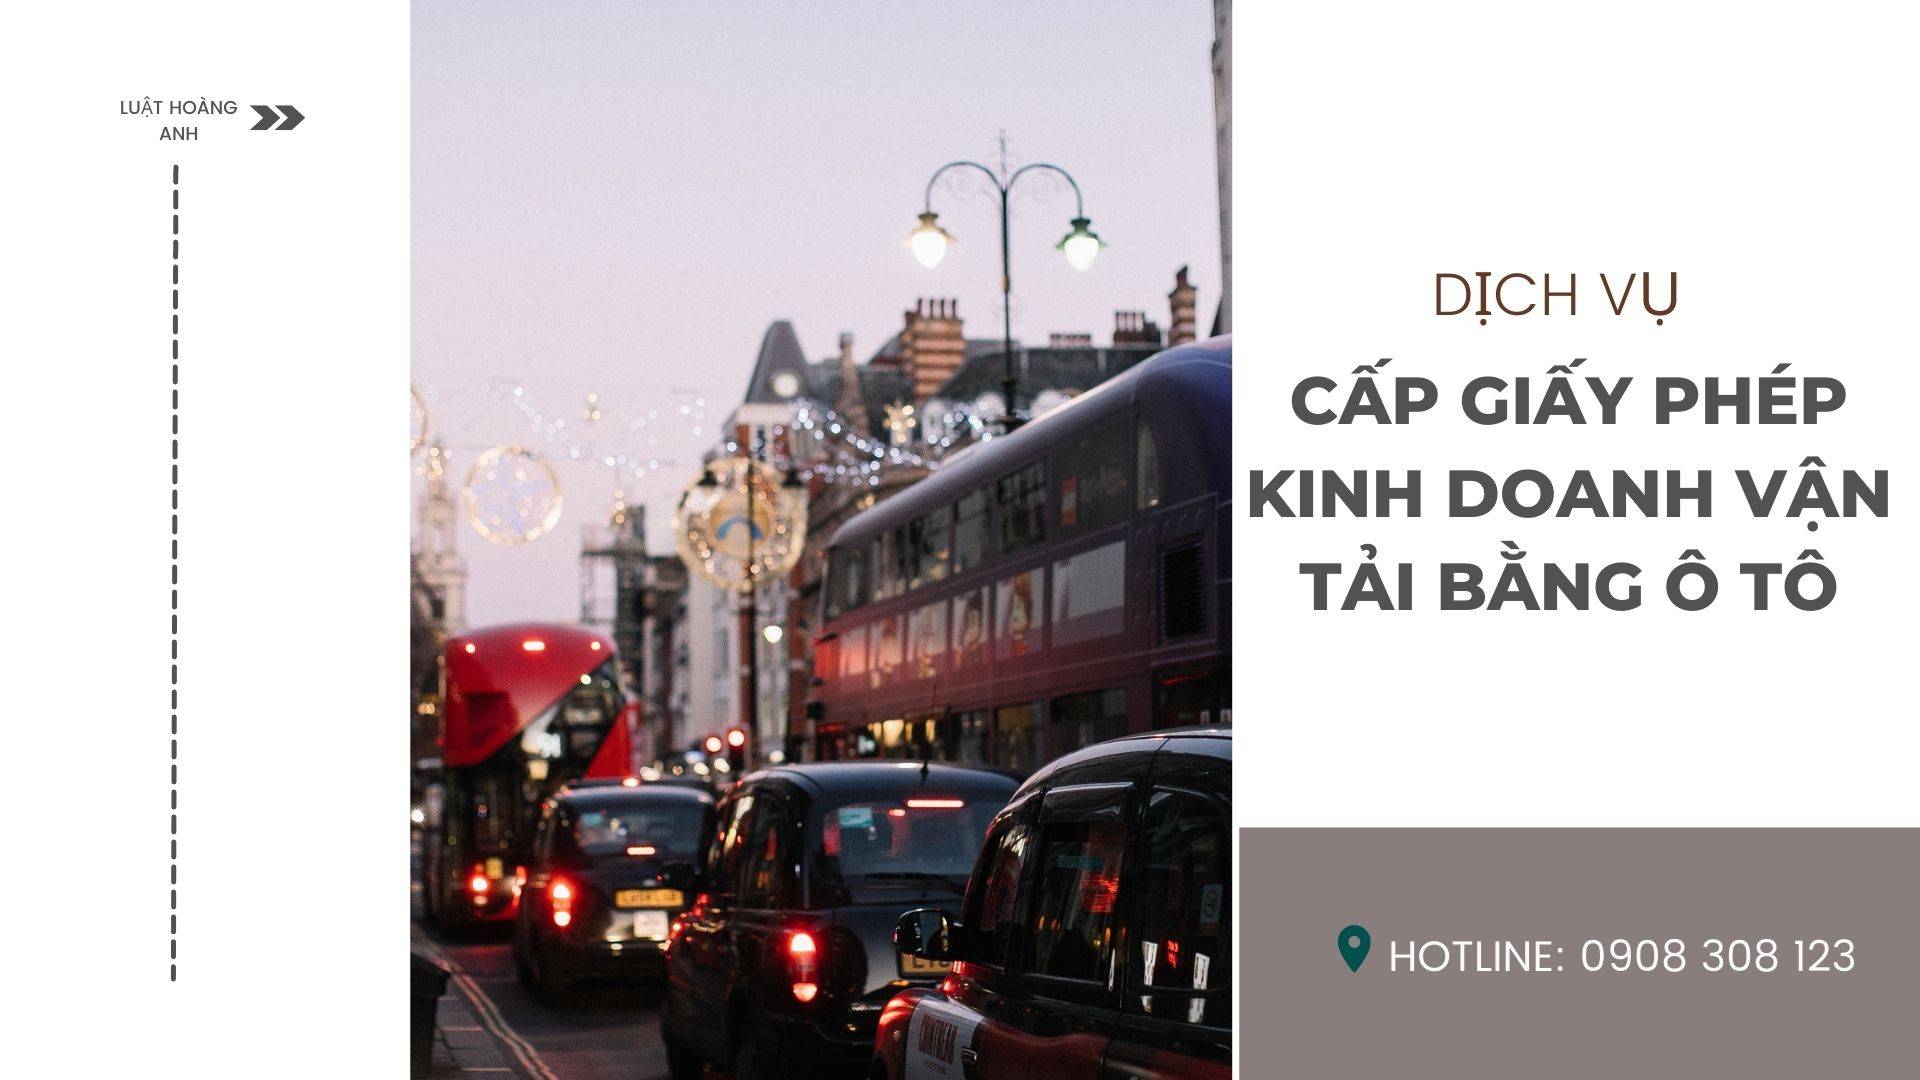 Dịch vụ cấp giấy phép kinh doanh vận tải bằng ô tô tại tỉnh Bình Thuận